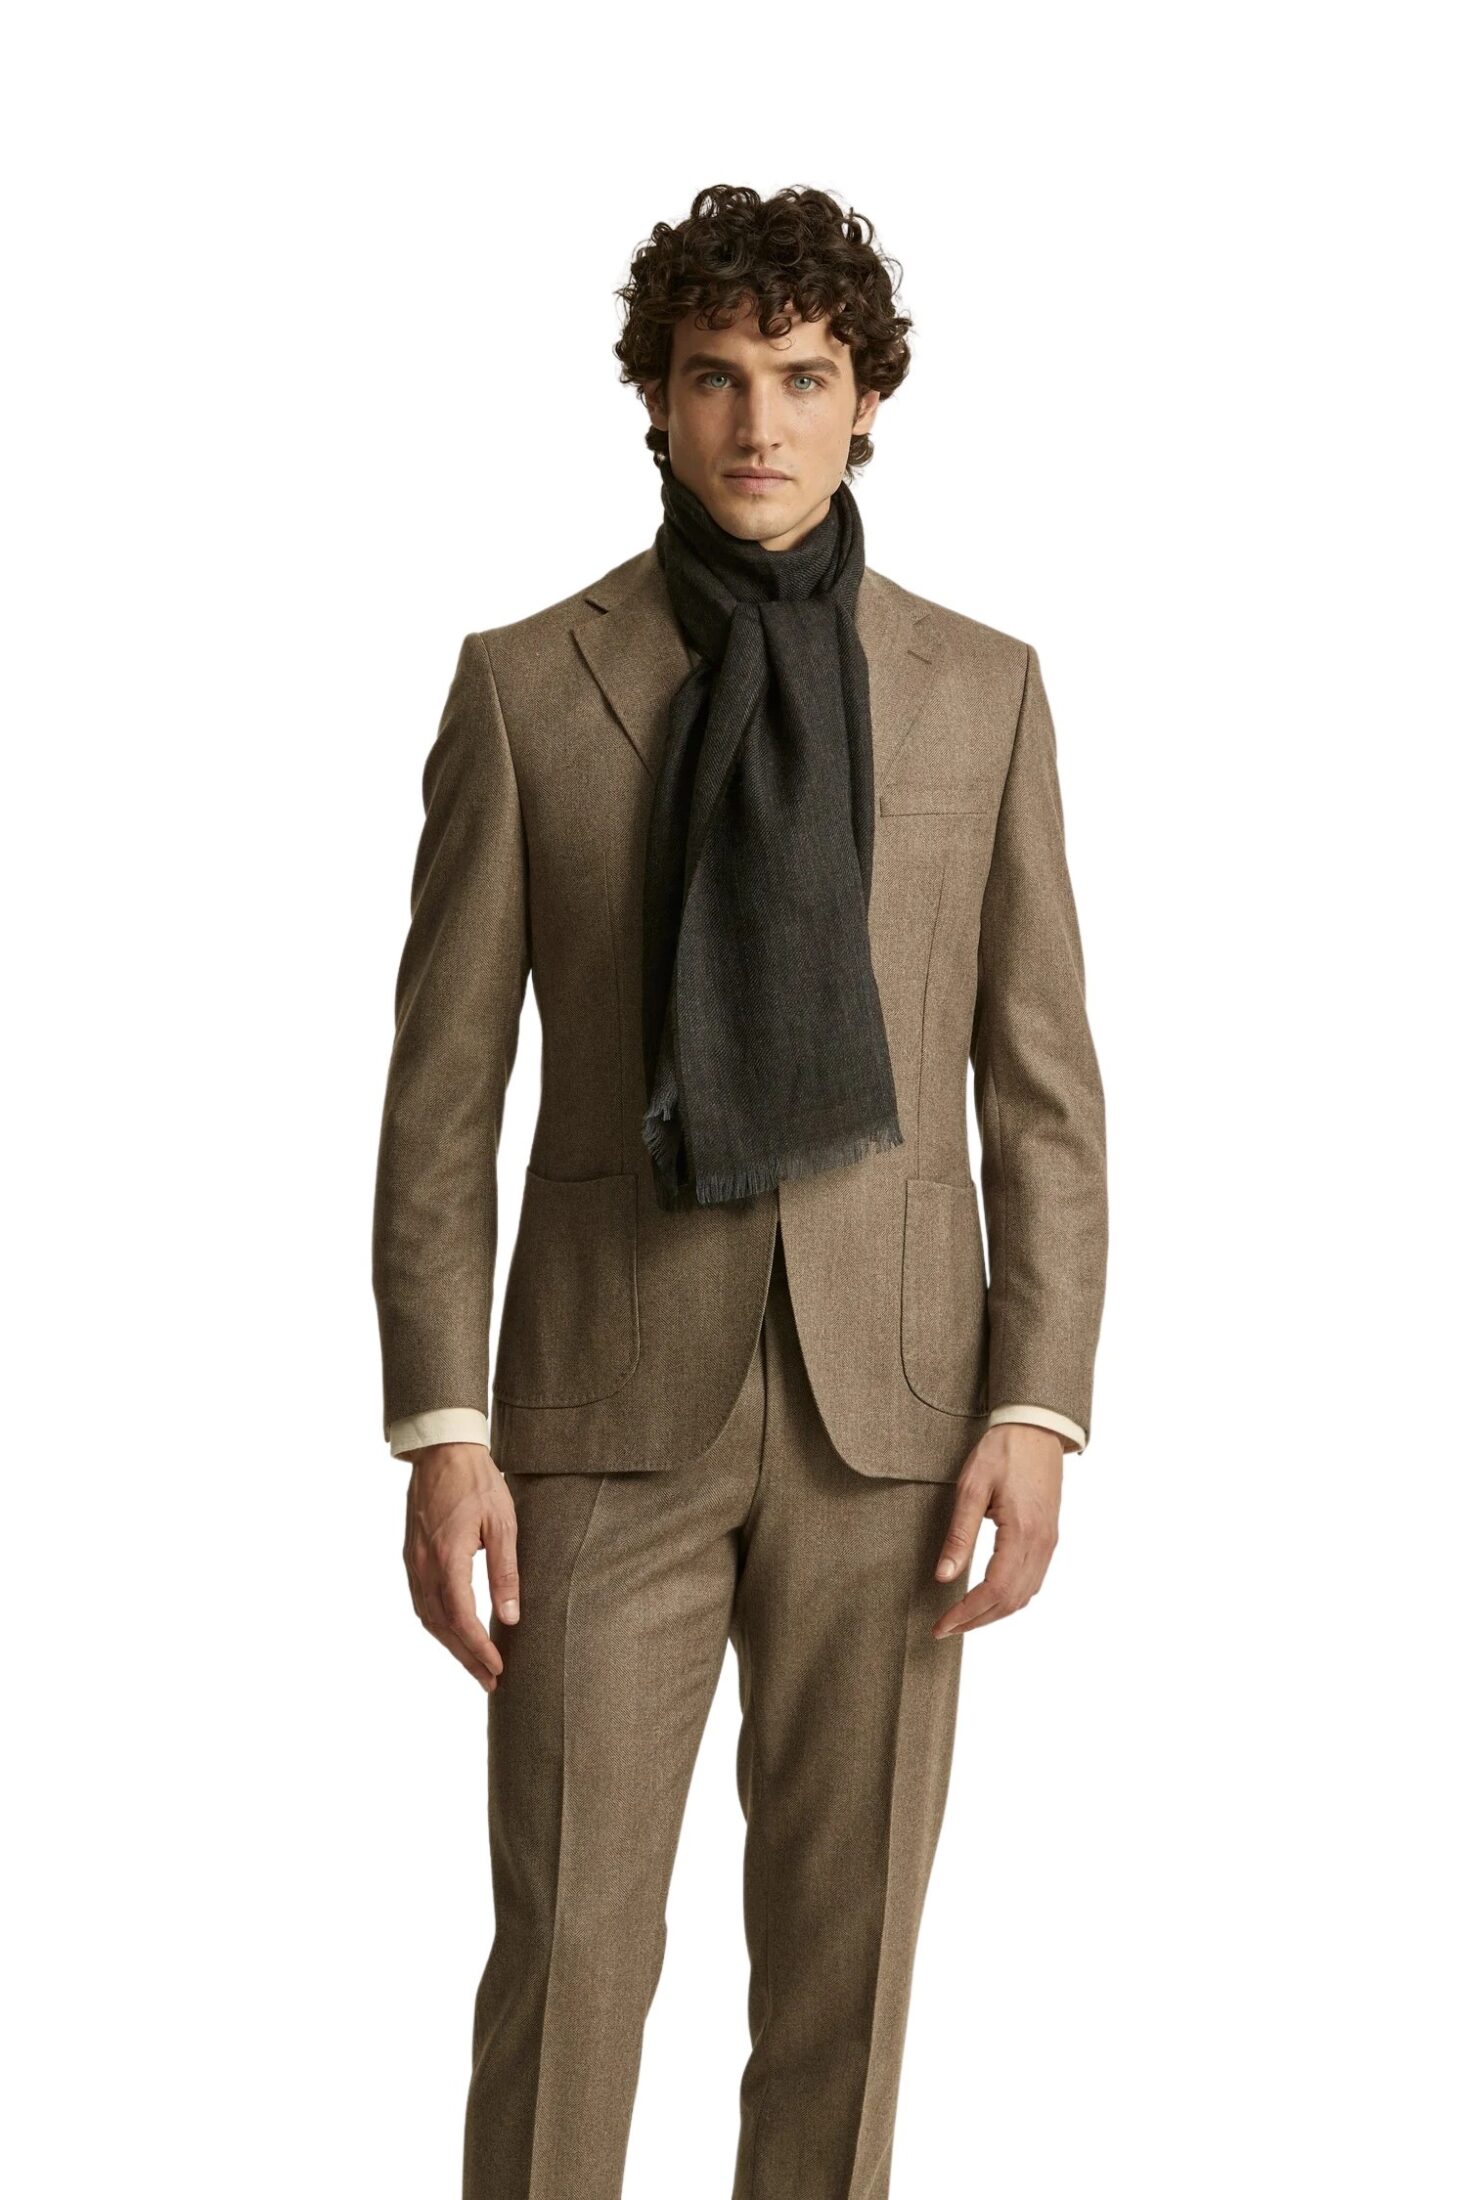 1745_77a12cfad6-200914-keith-herringbone-suit-jacket-85-brown-1-full